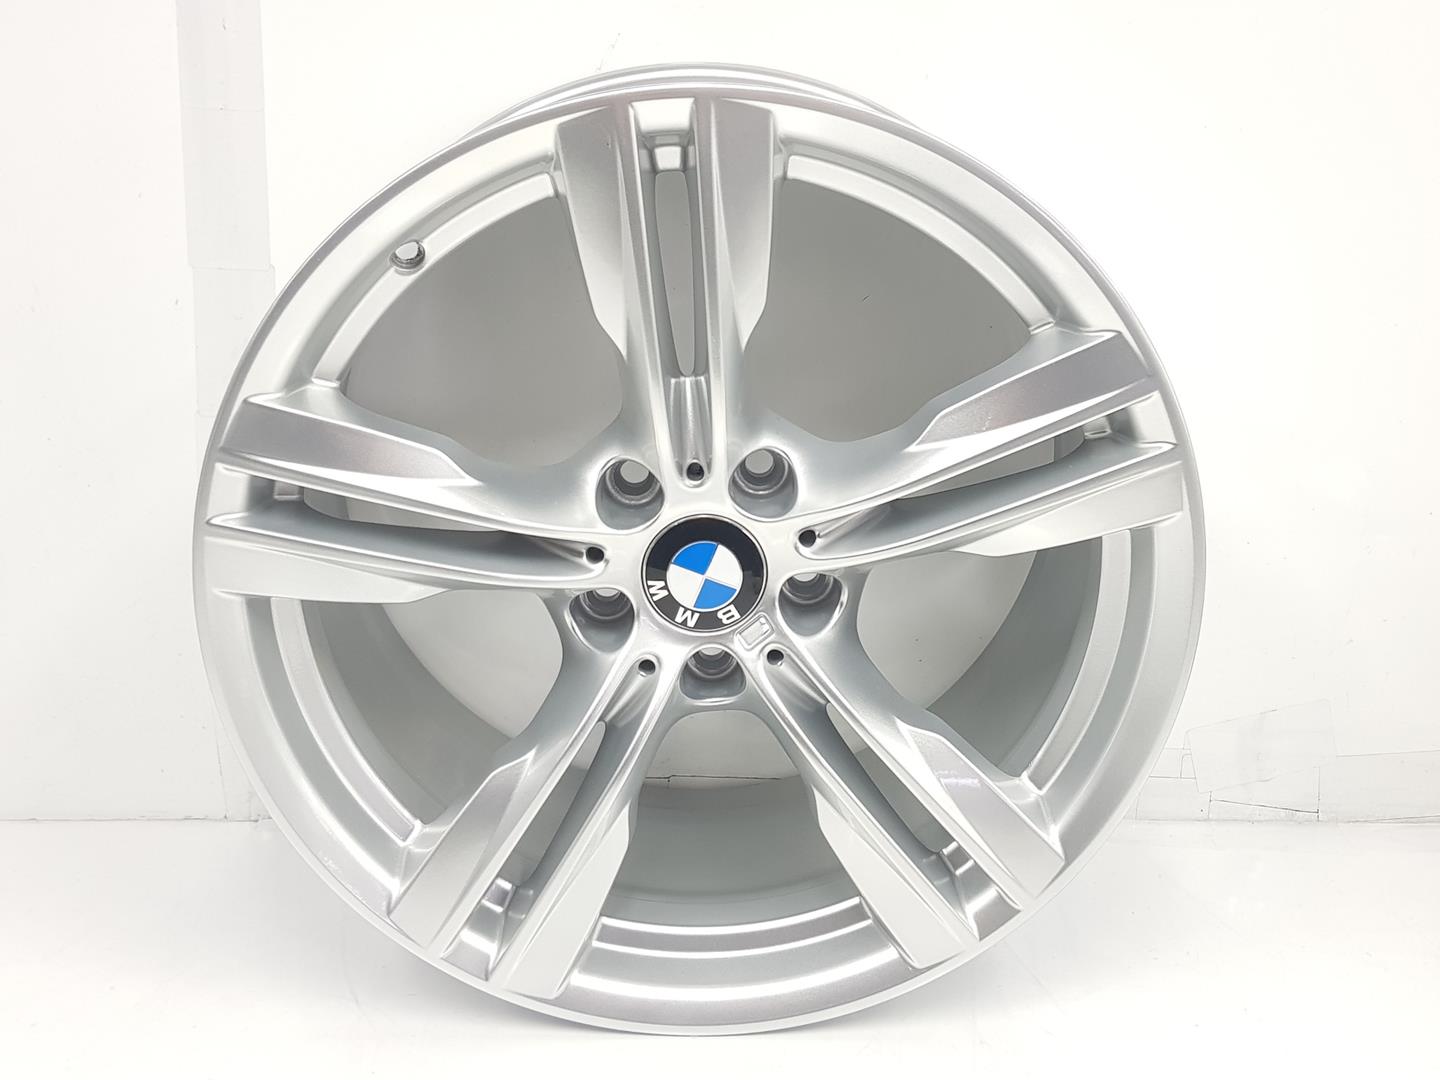 BMW X5 F15 (2013-2018) Wheel 36117846786, 9JX19, 19PULGADAS 24238662